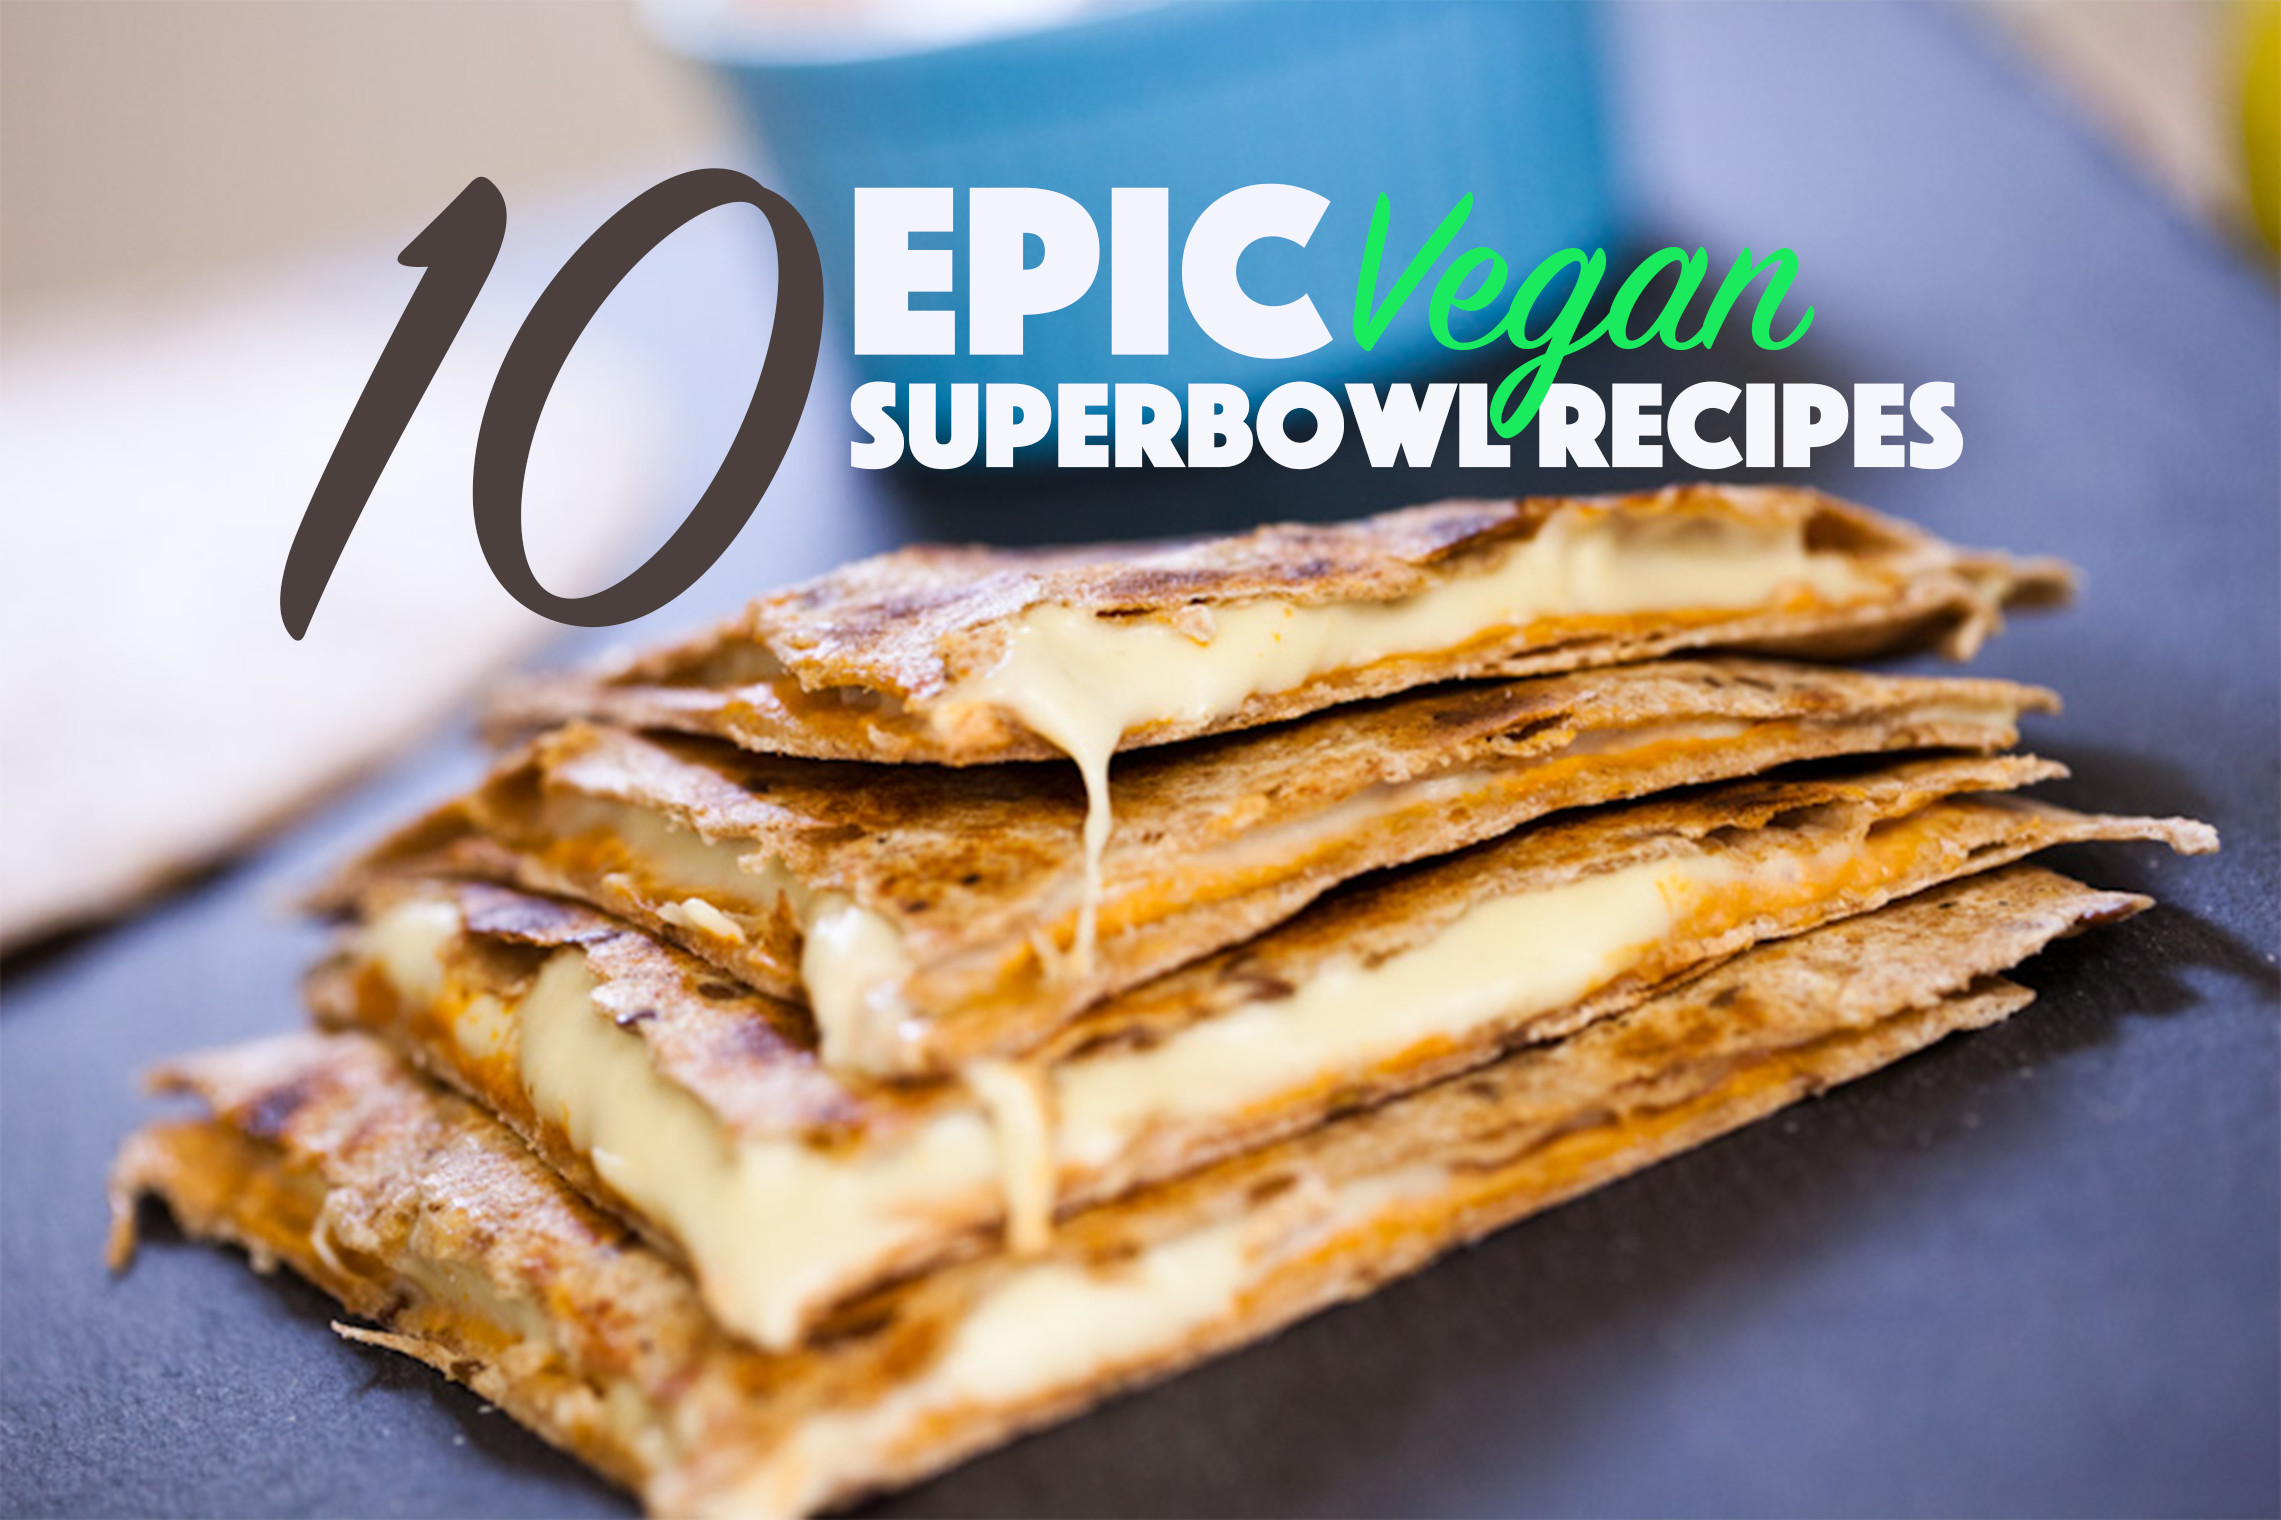 Vegetarian Super Bowl Recipes
 10 Epic Vegan Super Bowl Recipes